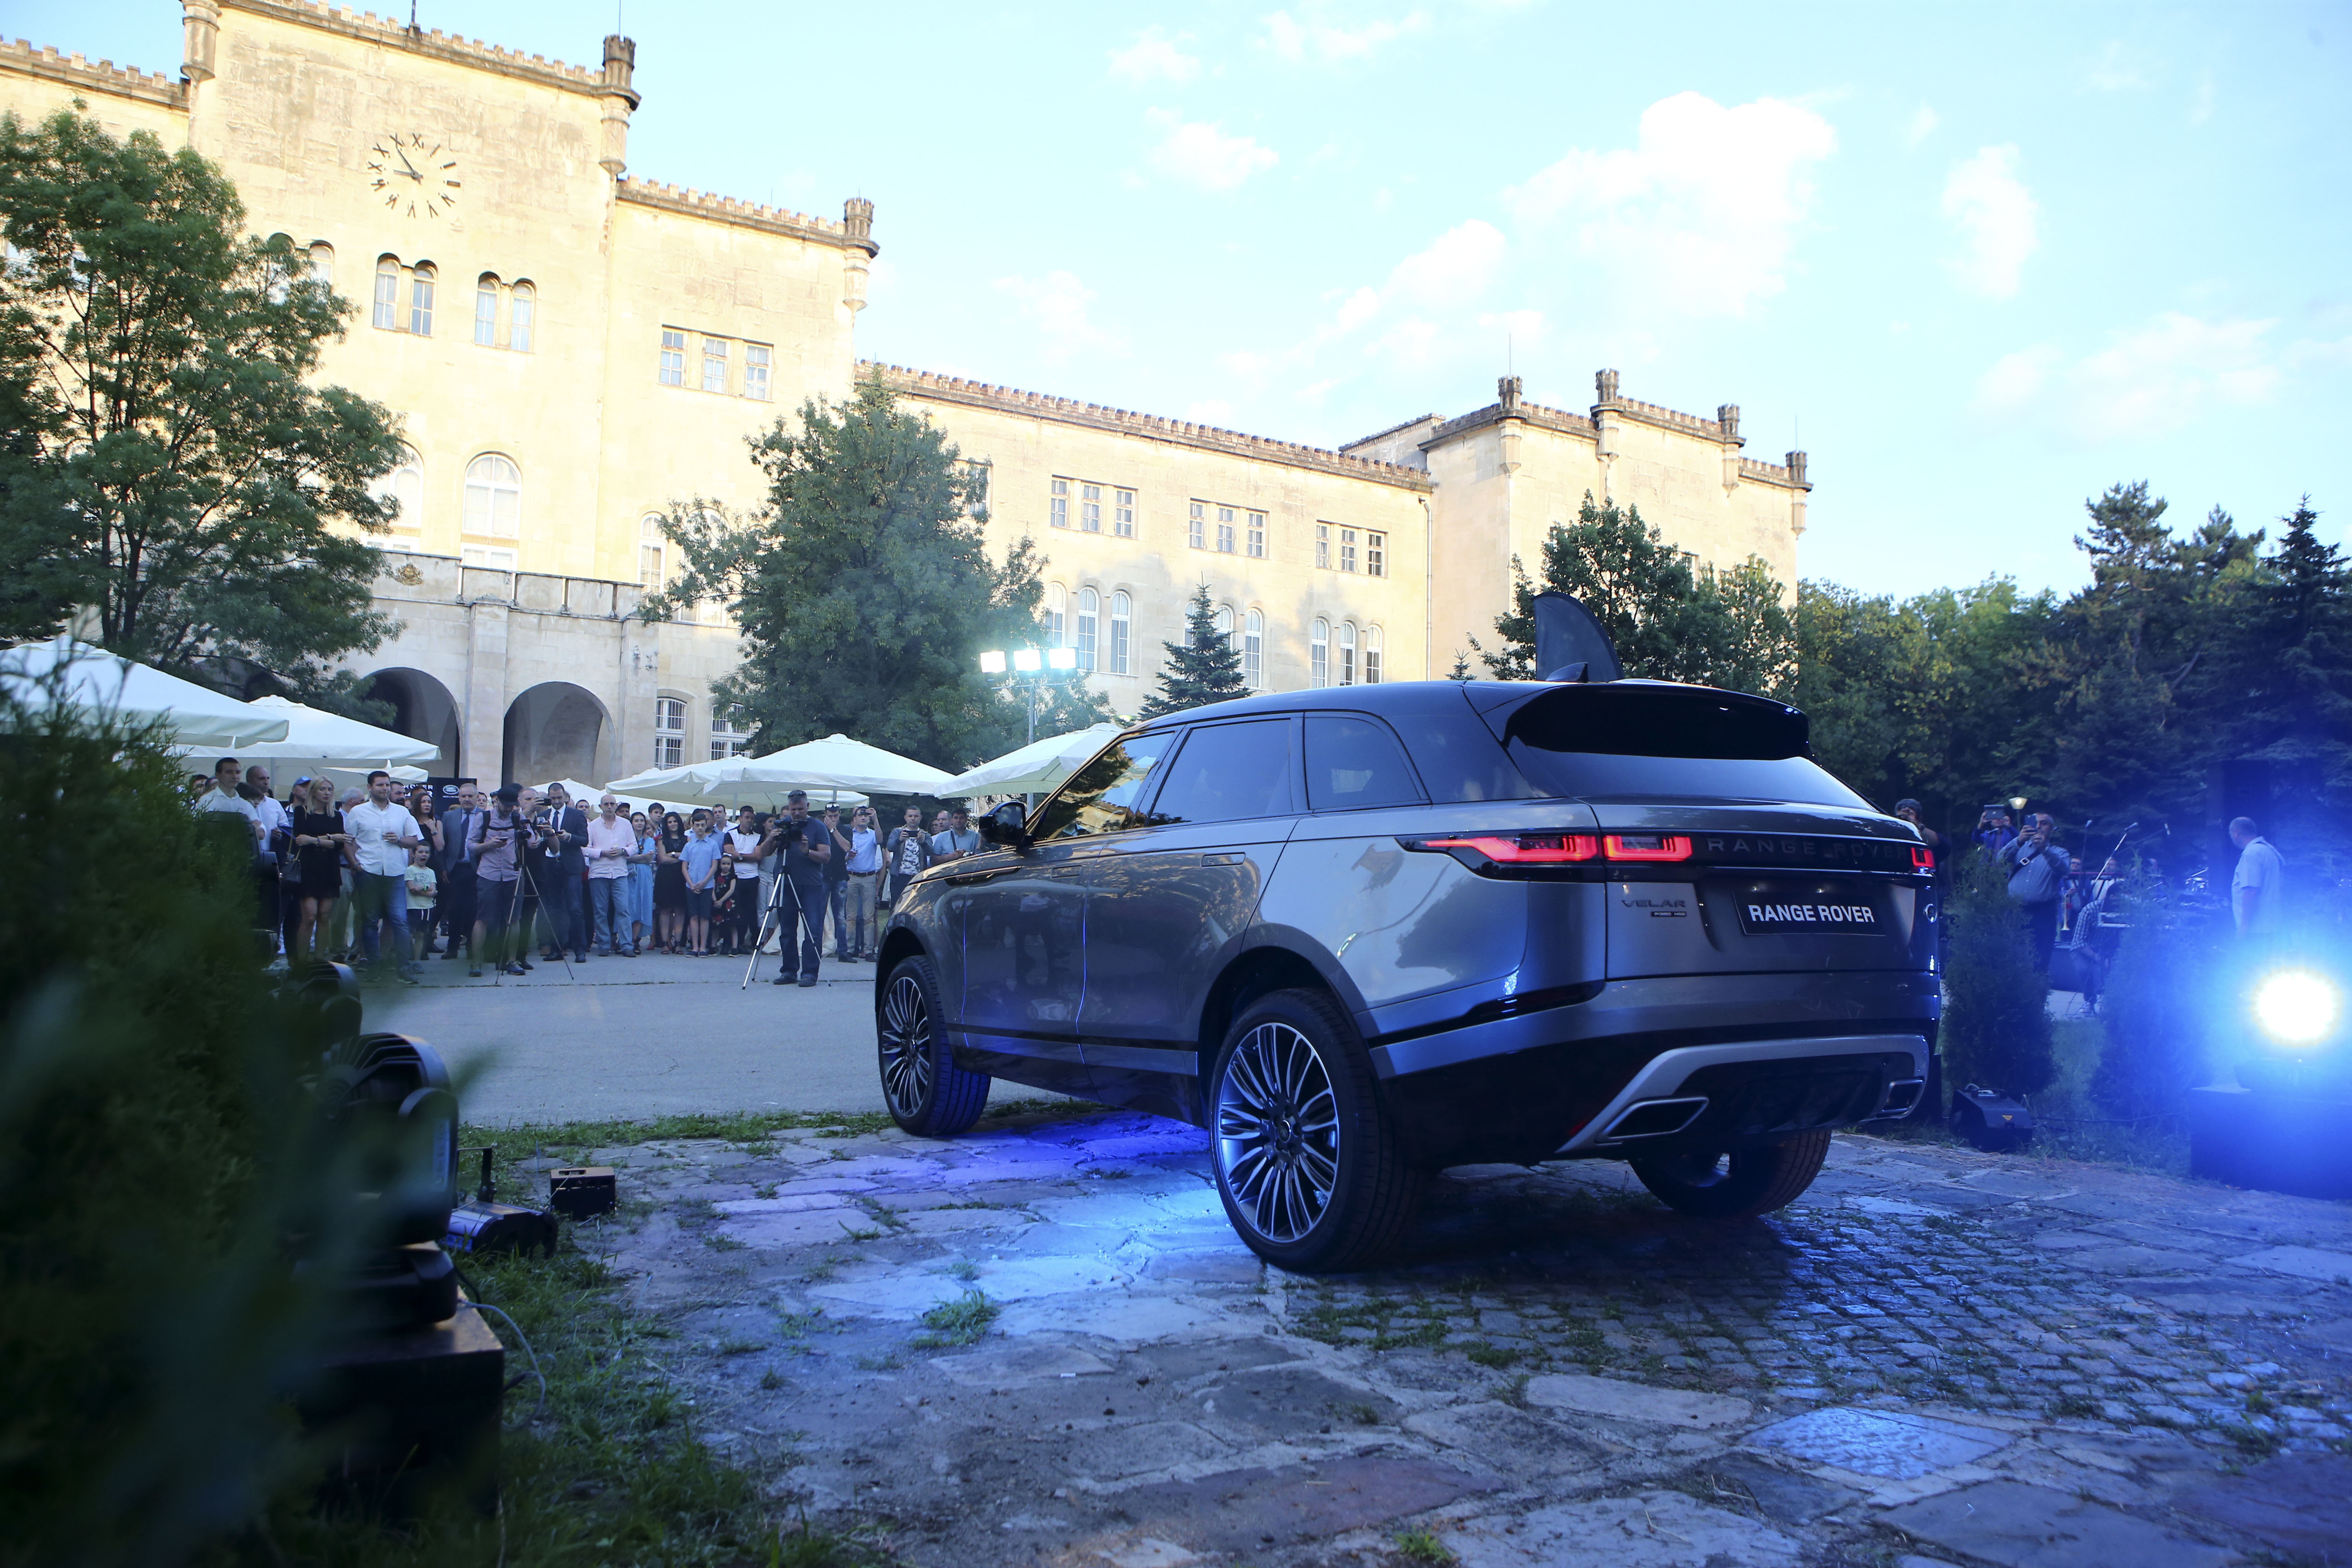 Range Rover Velar е вече в България